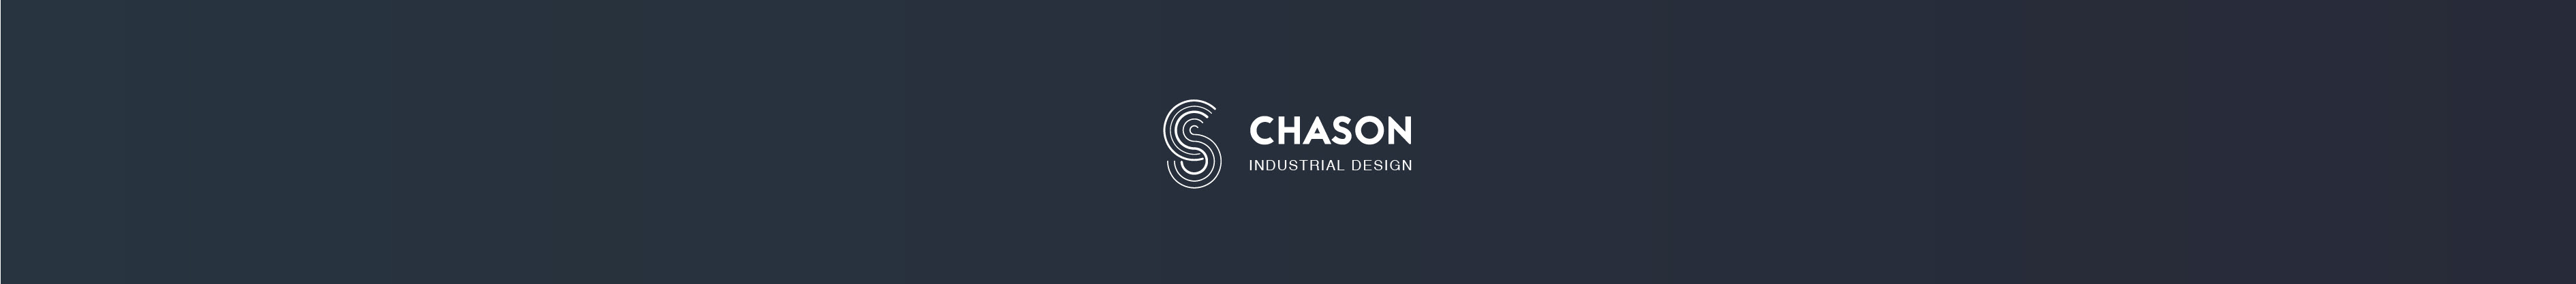 Chason You profil başlığı